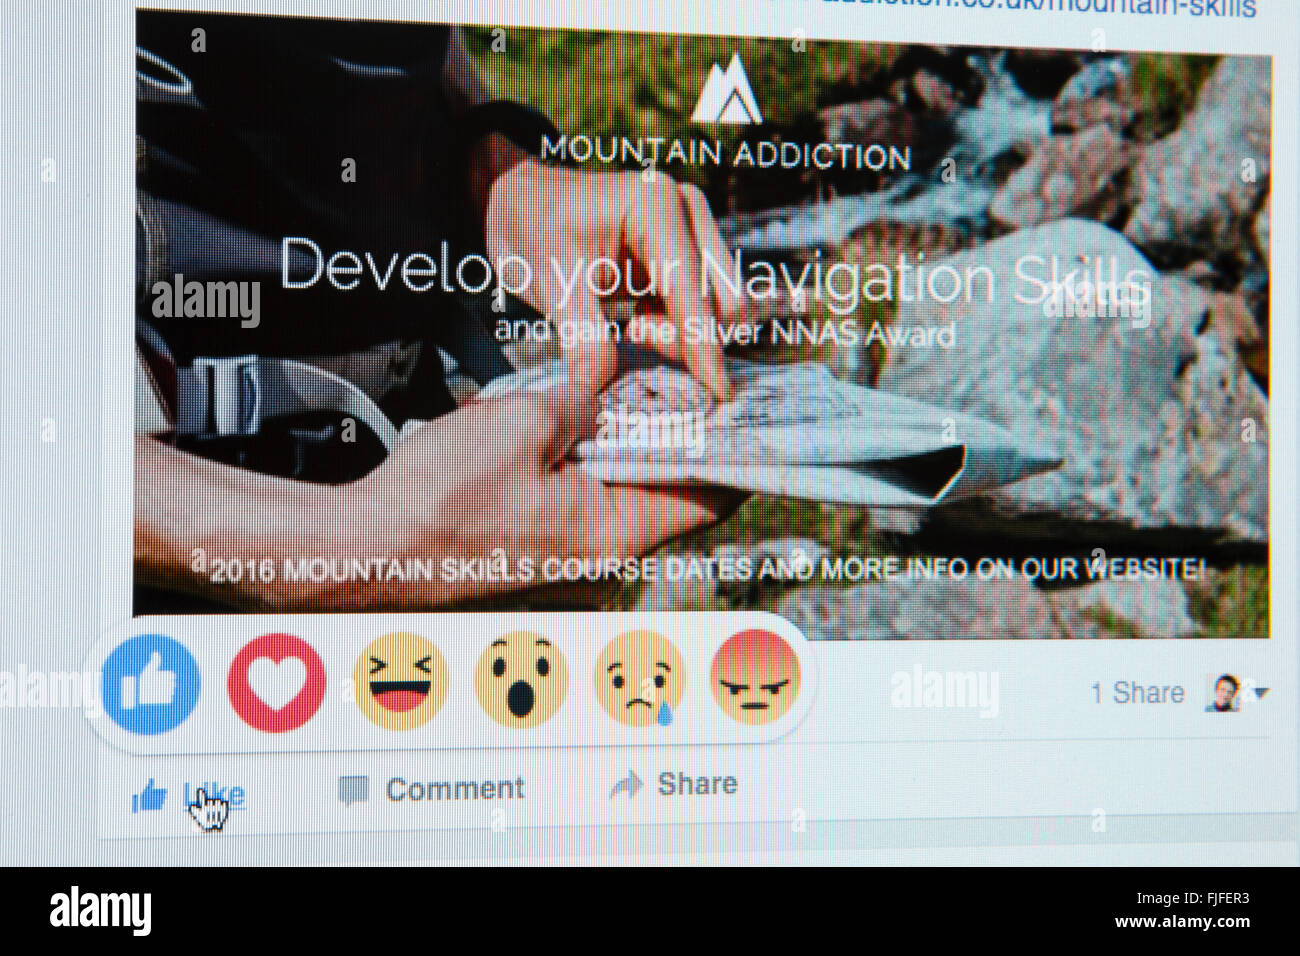 Close-up d'écran de Facebook site montrant la main sur comme avec de nouveaux emoji réactions sur une page d'entreprise. Empreinte numérique active. Angleterre Royaume-uni Grande-Bretagne Banque D'Images